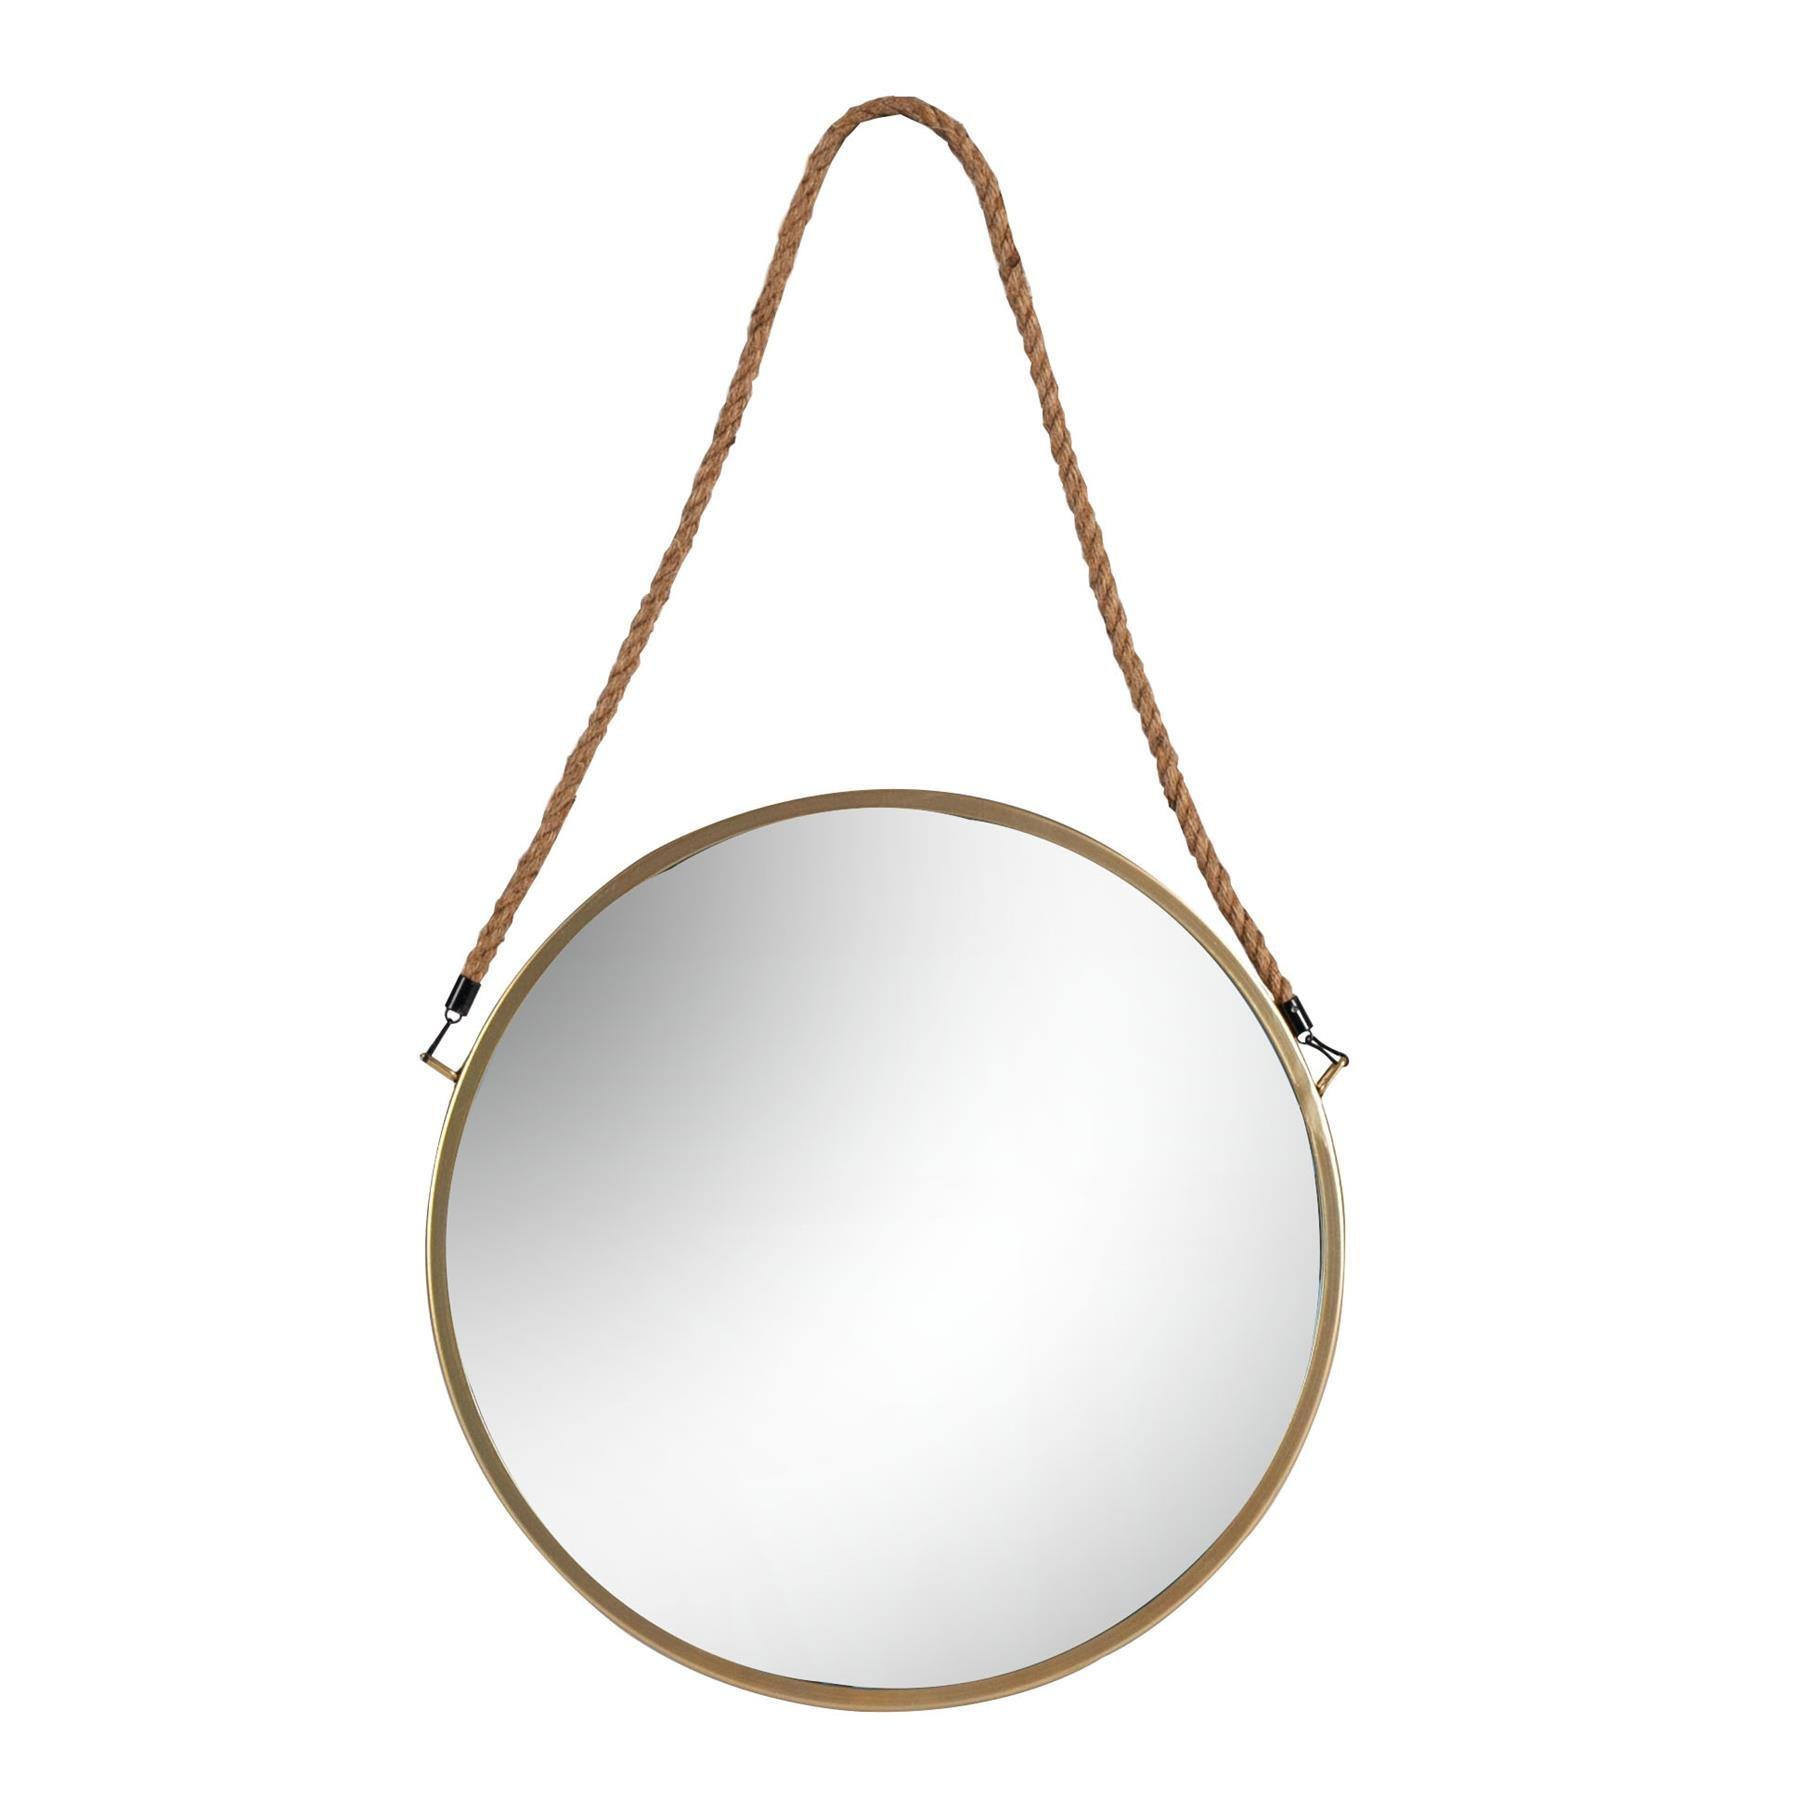 40cm Round Metal Frame Hanging Mirror on Rope Gold - image 1